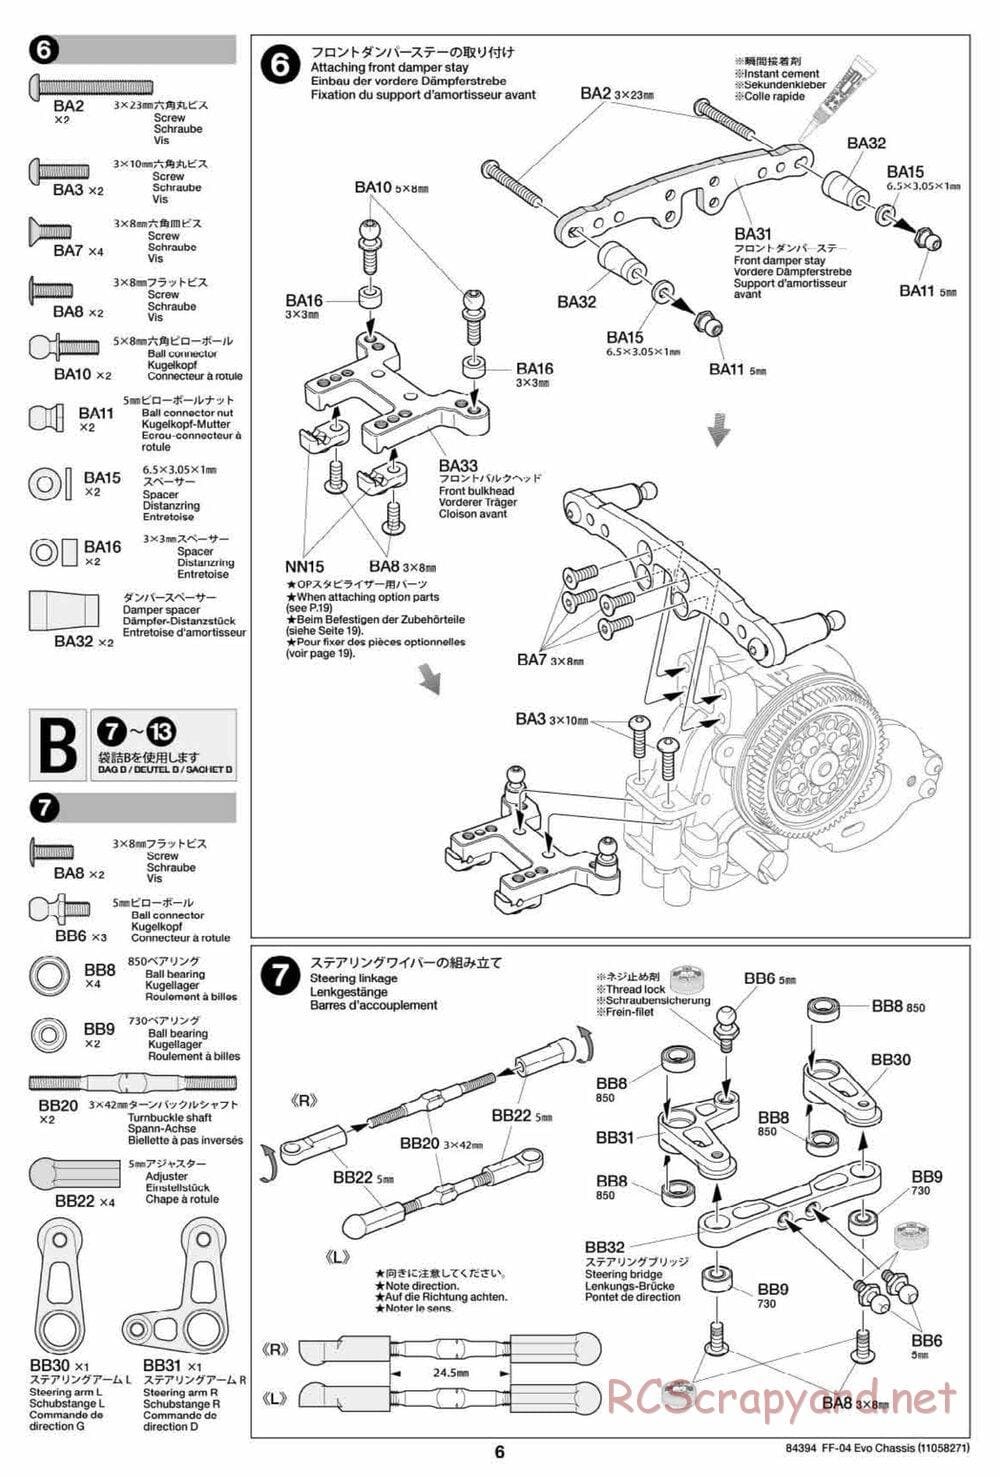 Tamiya - FF-04 Evo Chassis - Manual - Page 6